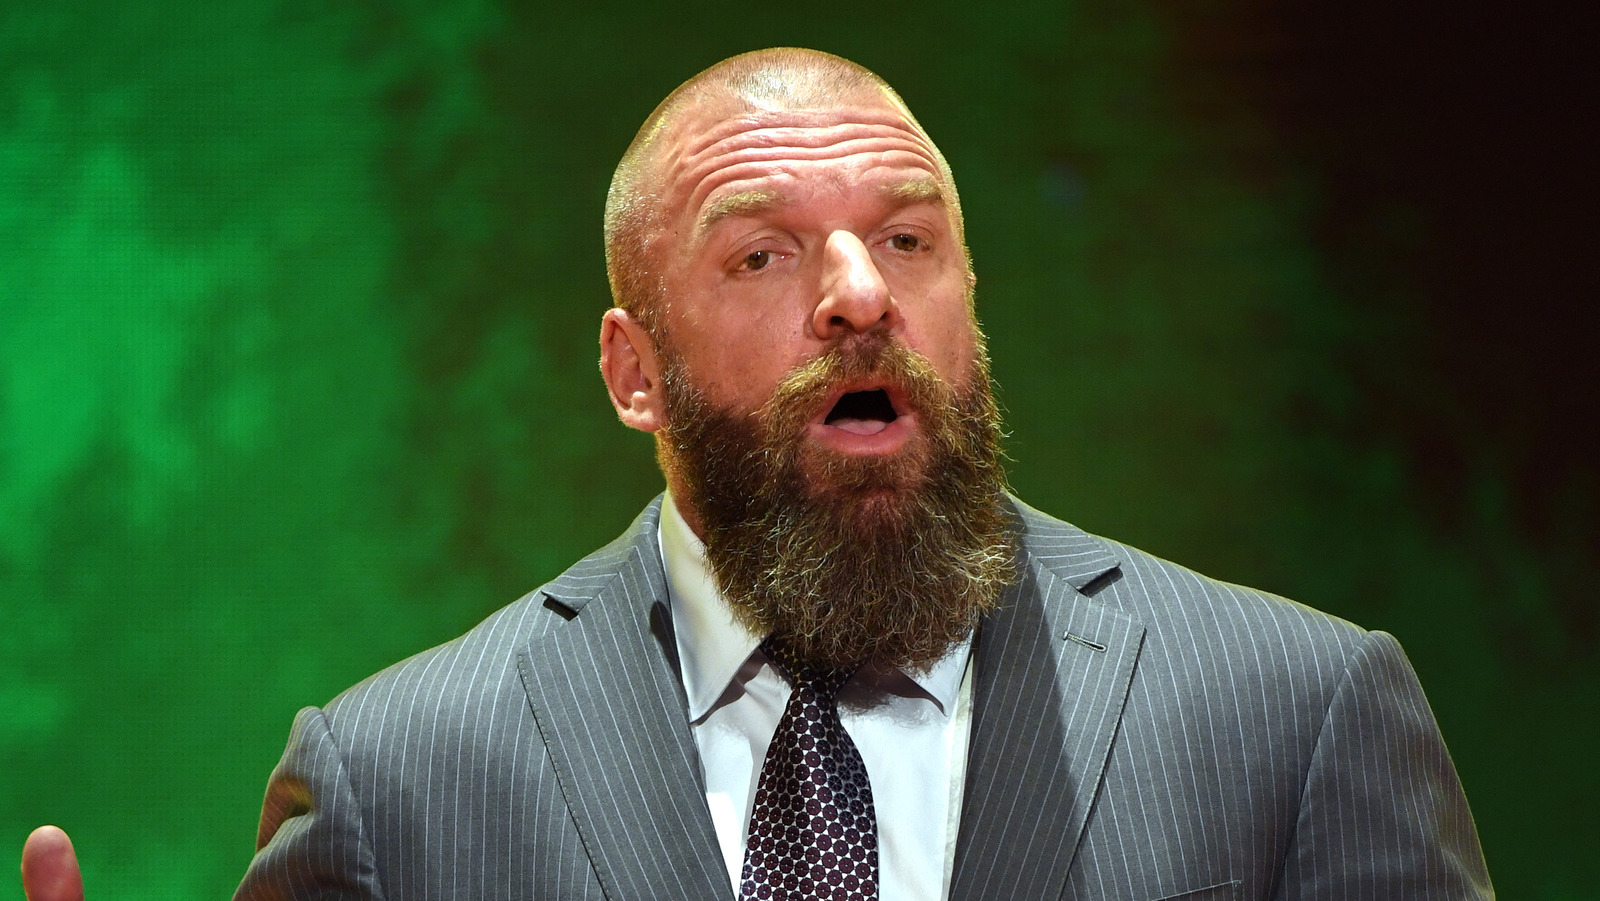 WWE demanda al Fiscal General de Texas y busca sentencia declaratoria y orden judicial